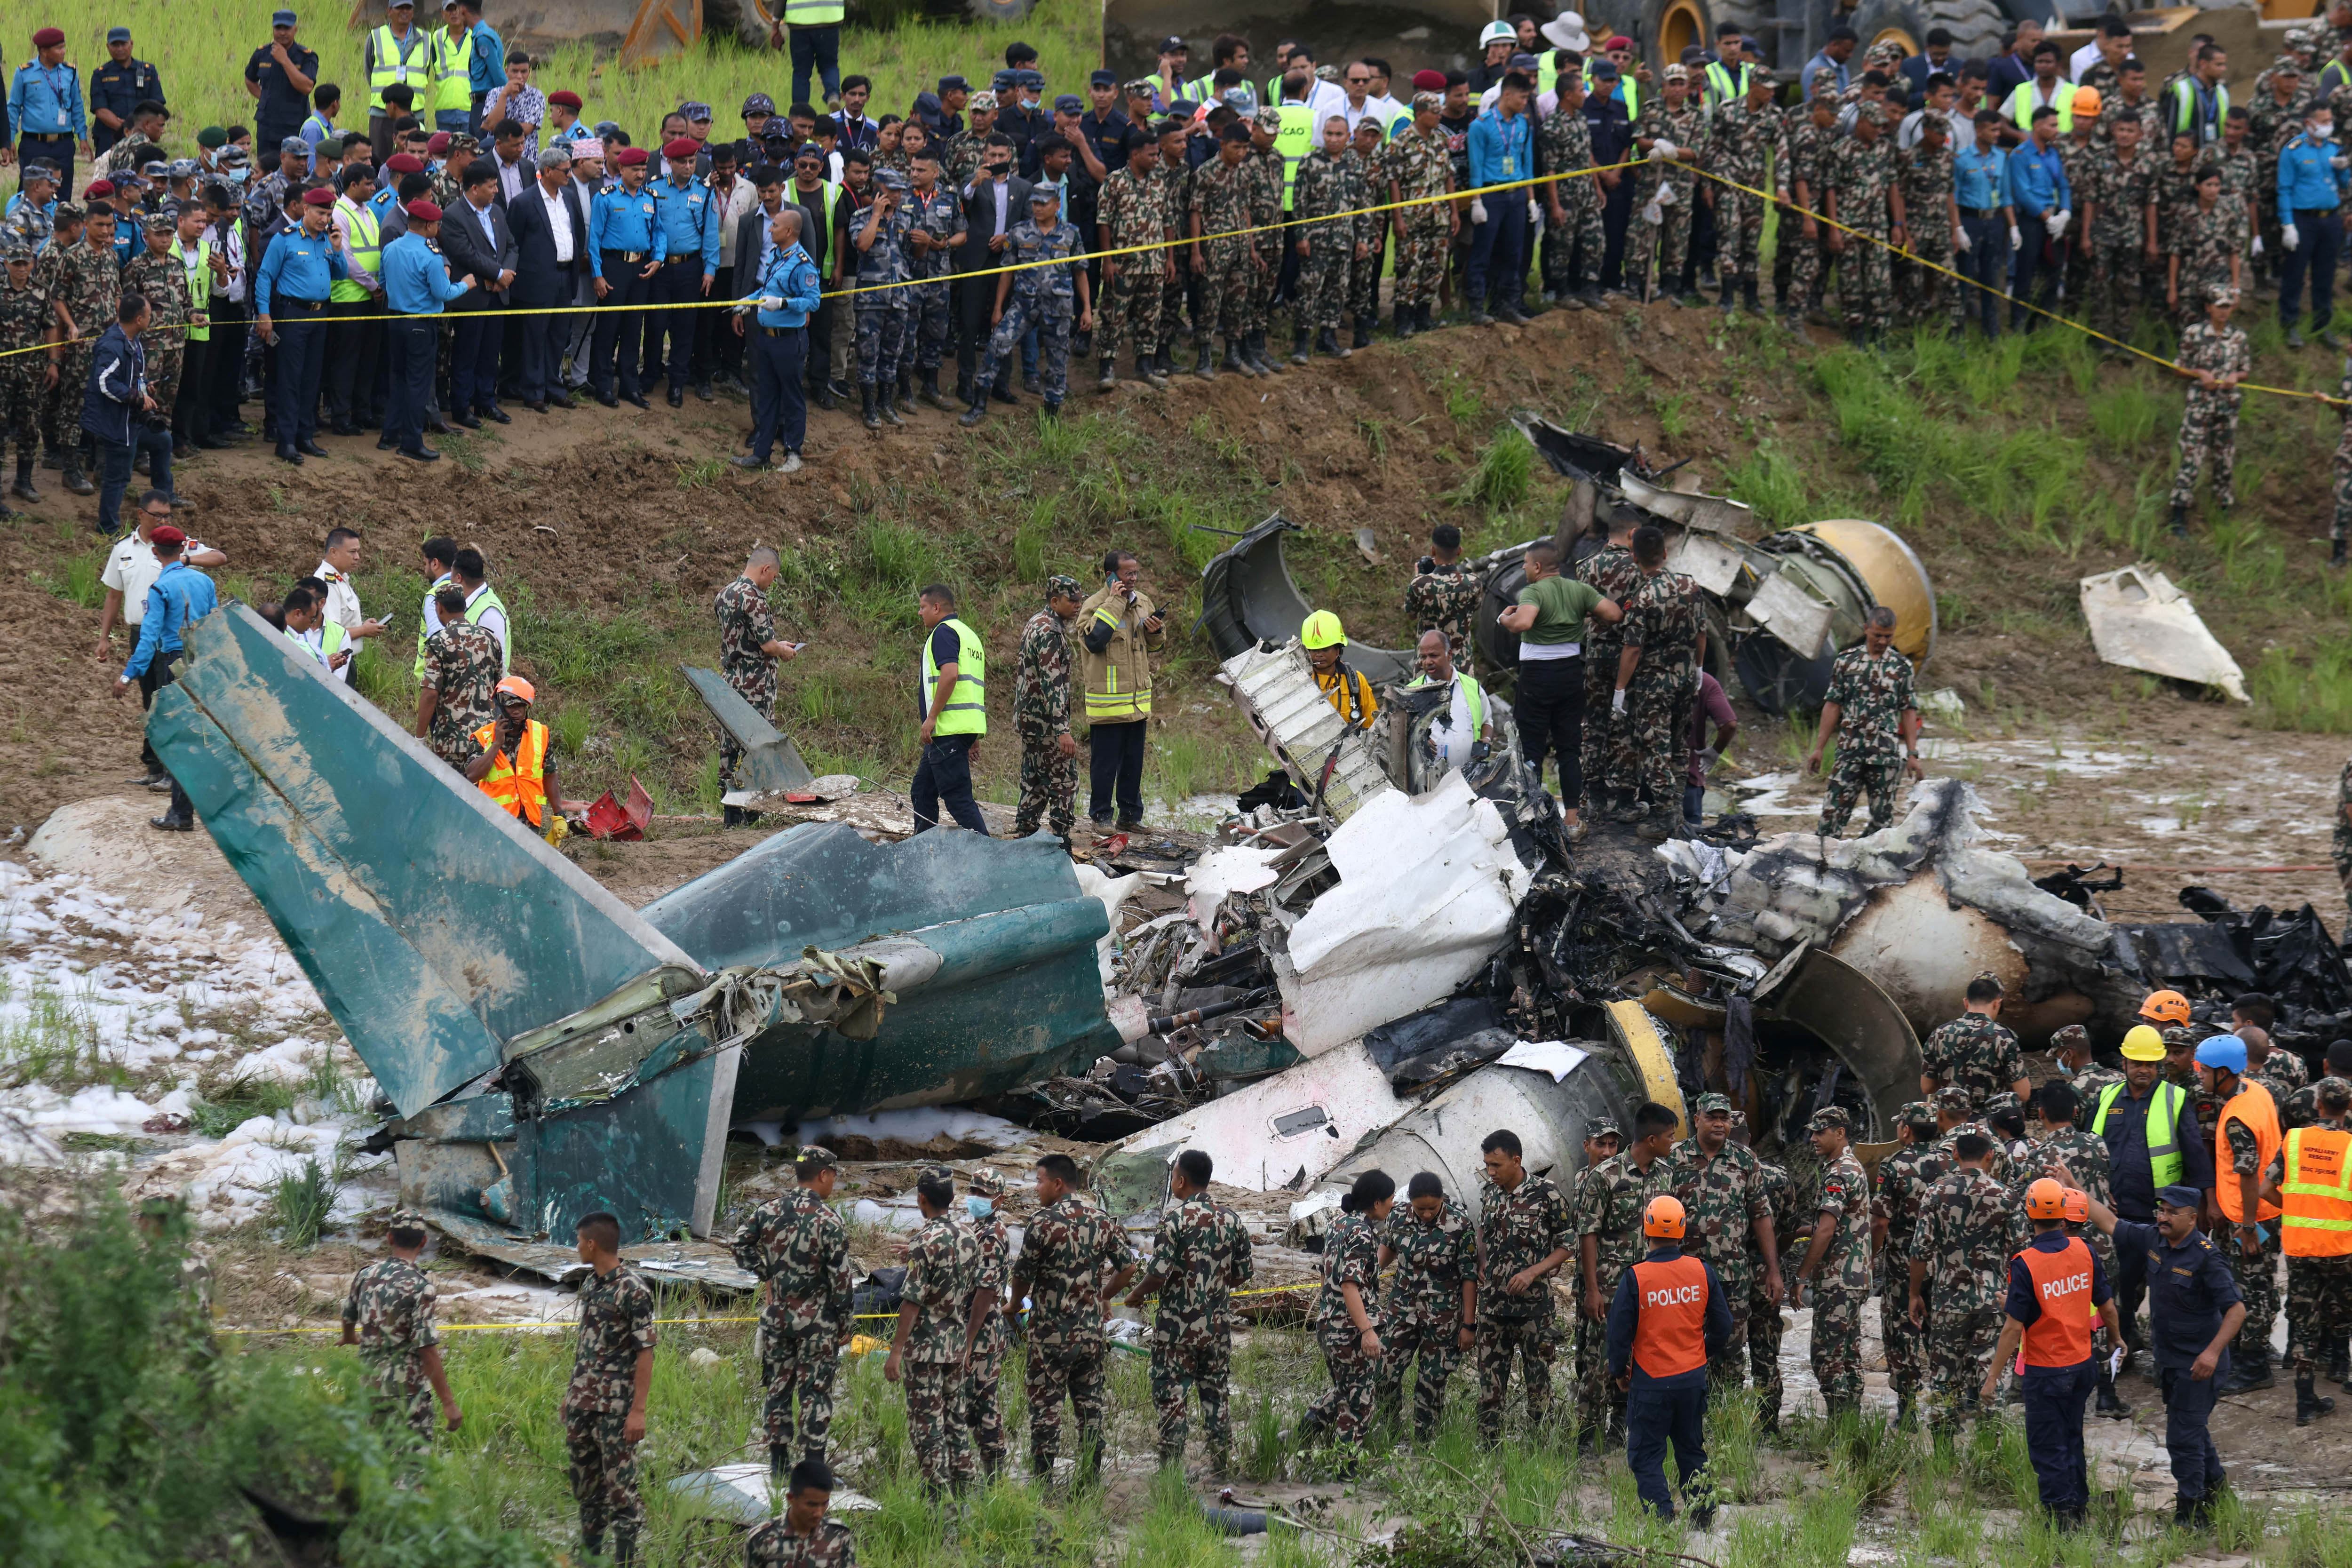  Un aereo si è incendiato durante il decollo in Nepal: 18 le vittime